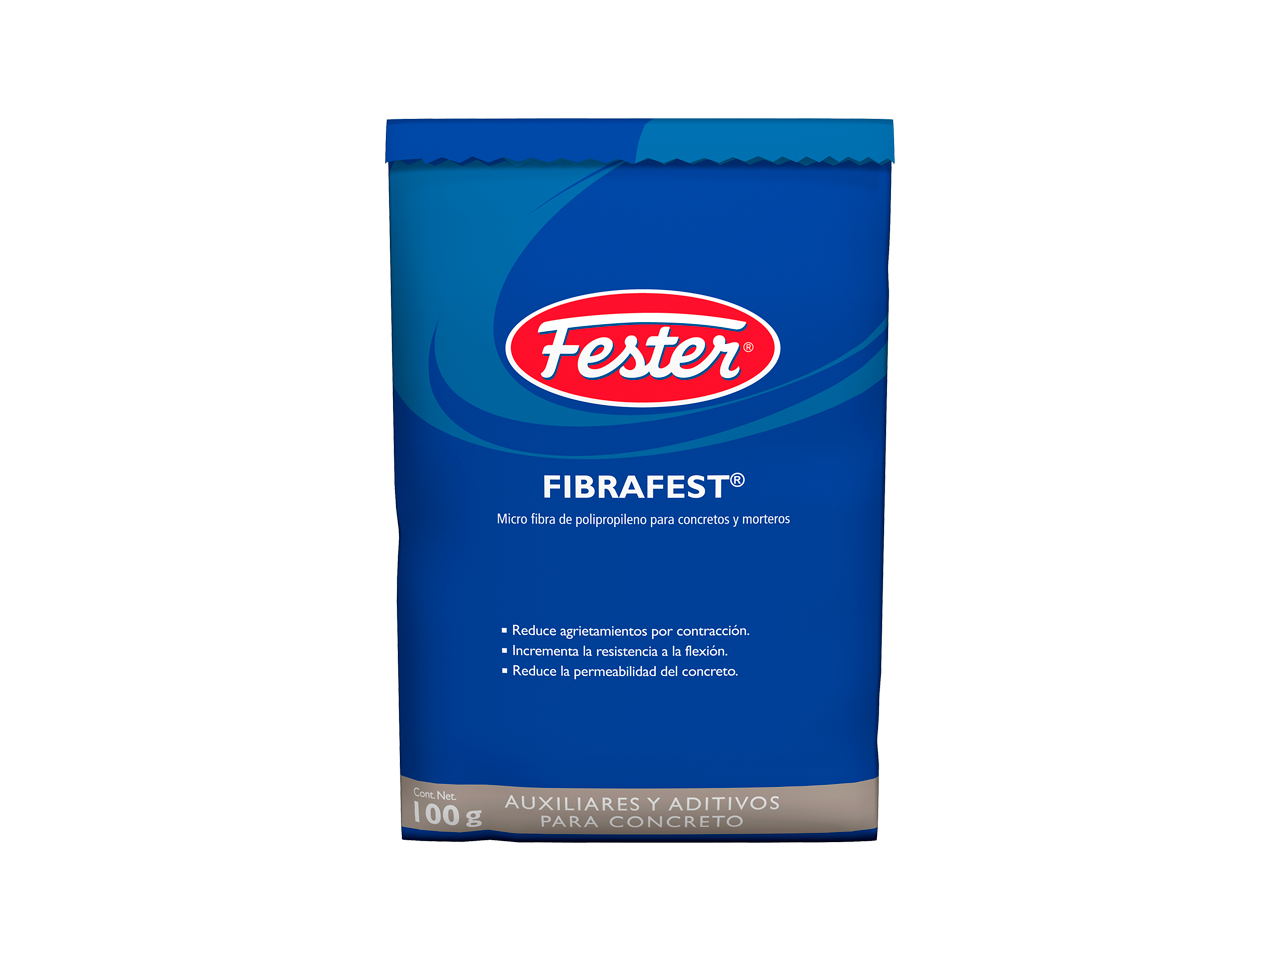 Envase de Fester Fibrafest aditivo reforzado con fibras. Aplicación de Fester Fibrafest en mezcla de concreto. Superficie de concreto mejorada con Fester Fibrafest. Detalle del aditivo con fibras Fester Fibrafest. Mejora de la resistencia del concreto con Fester Fibrafest.